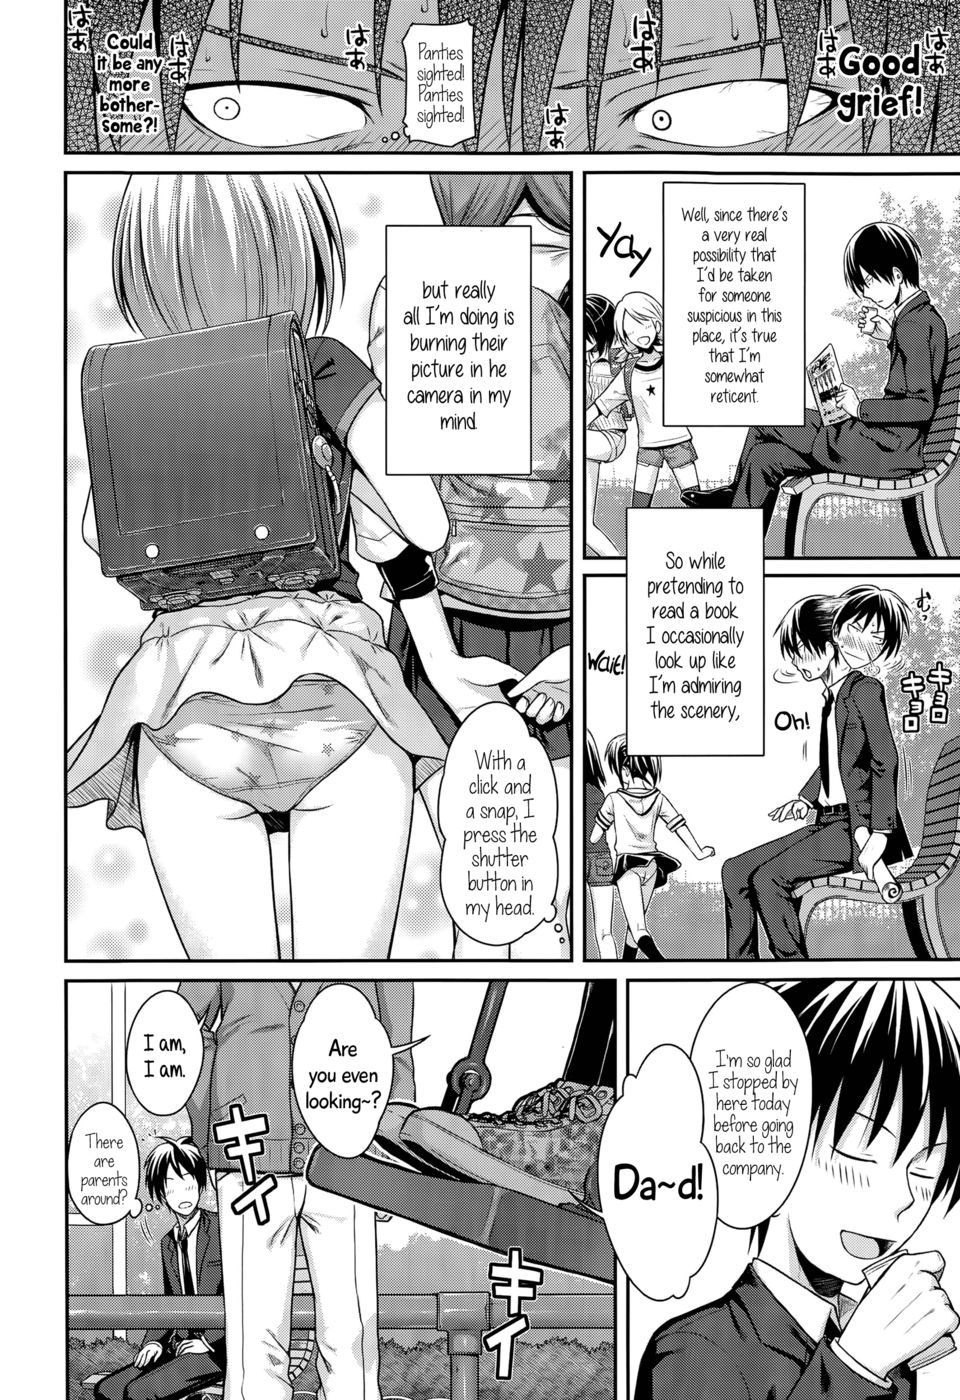 Father daughter manga porn